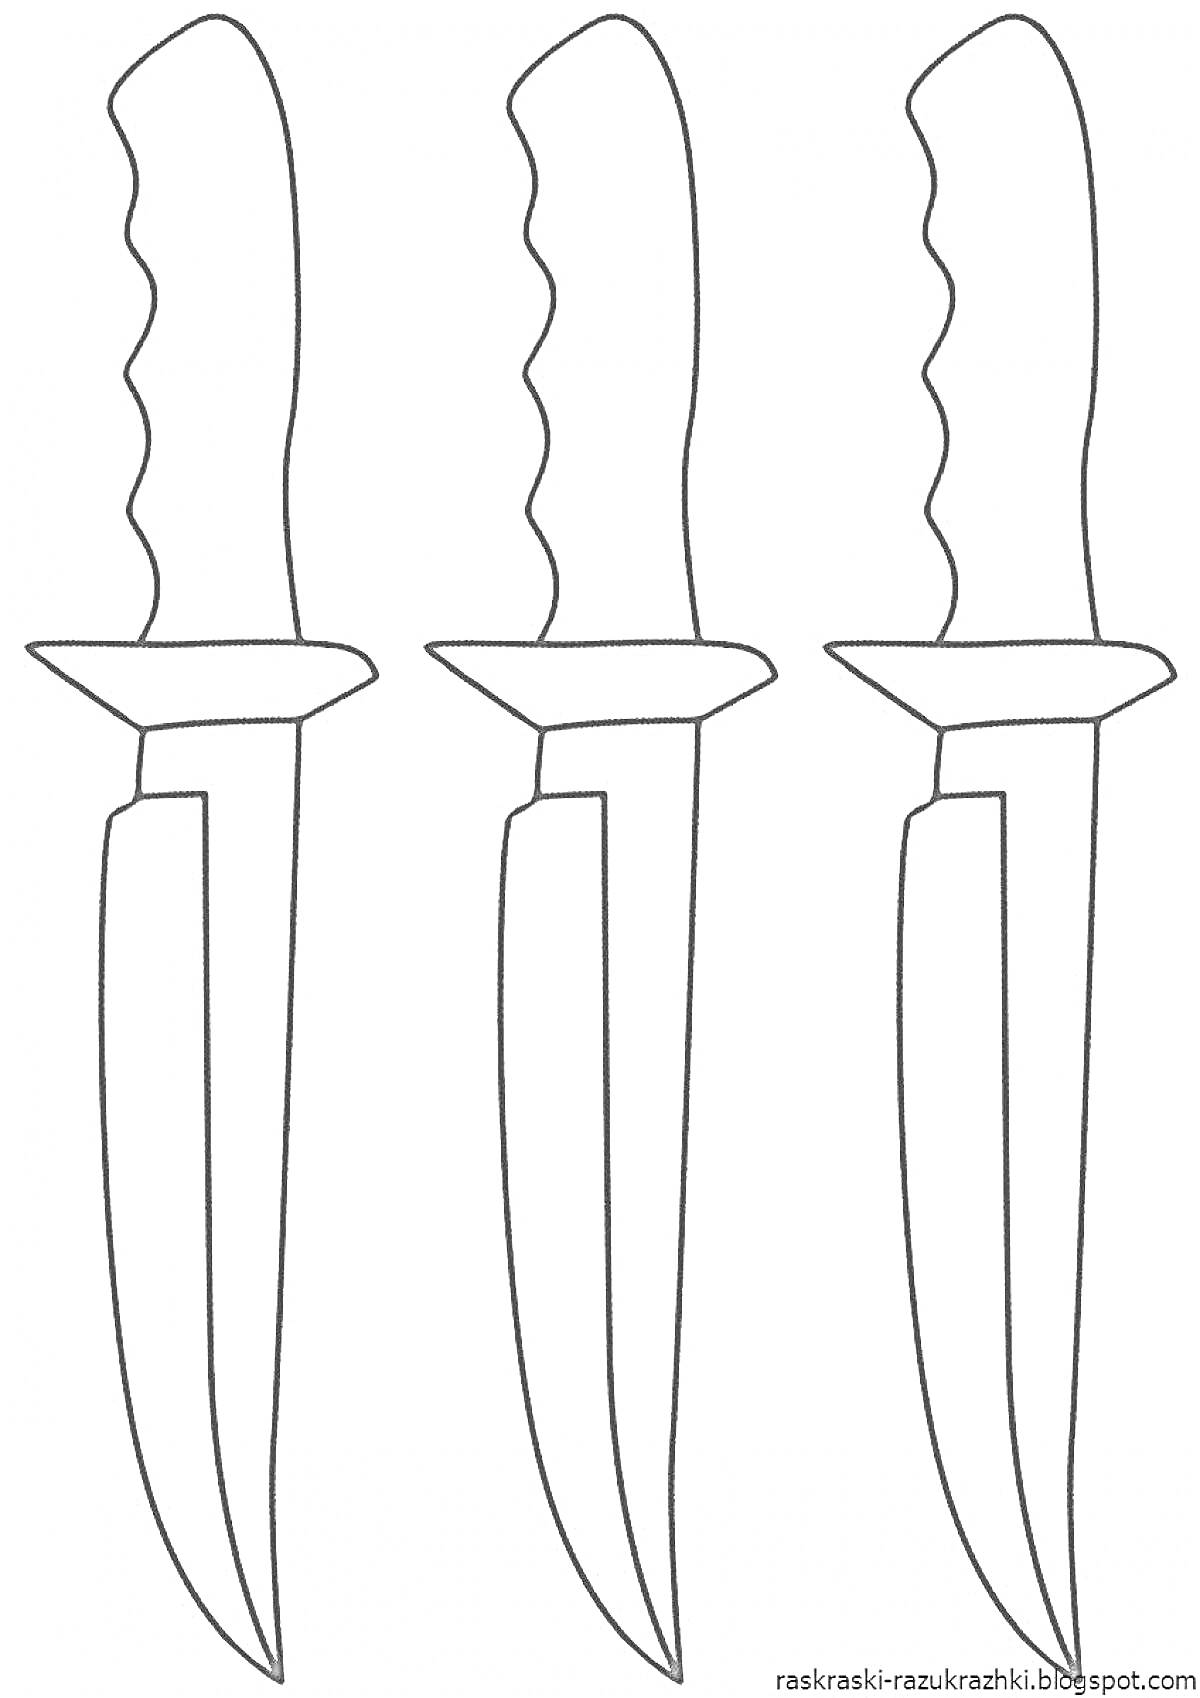 Три ножа с ручками-анатомическими выемками